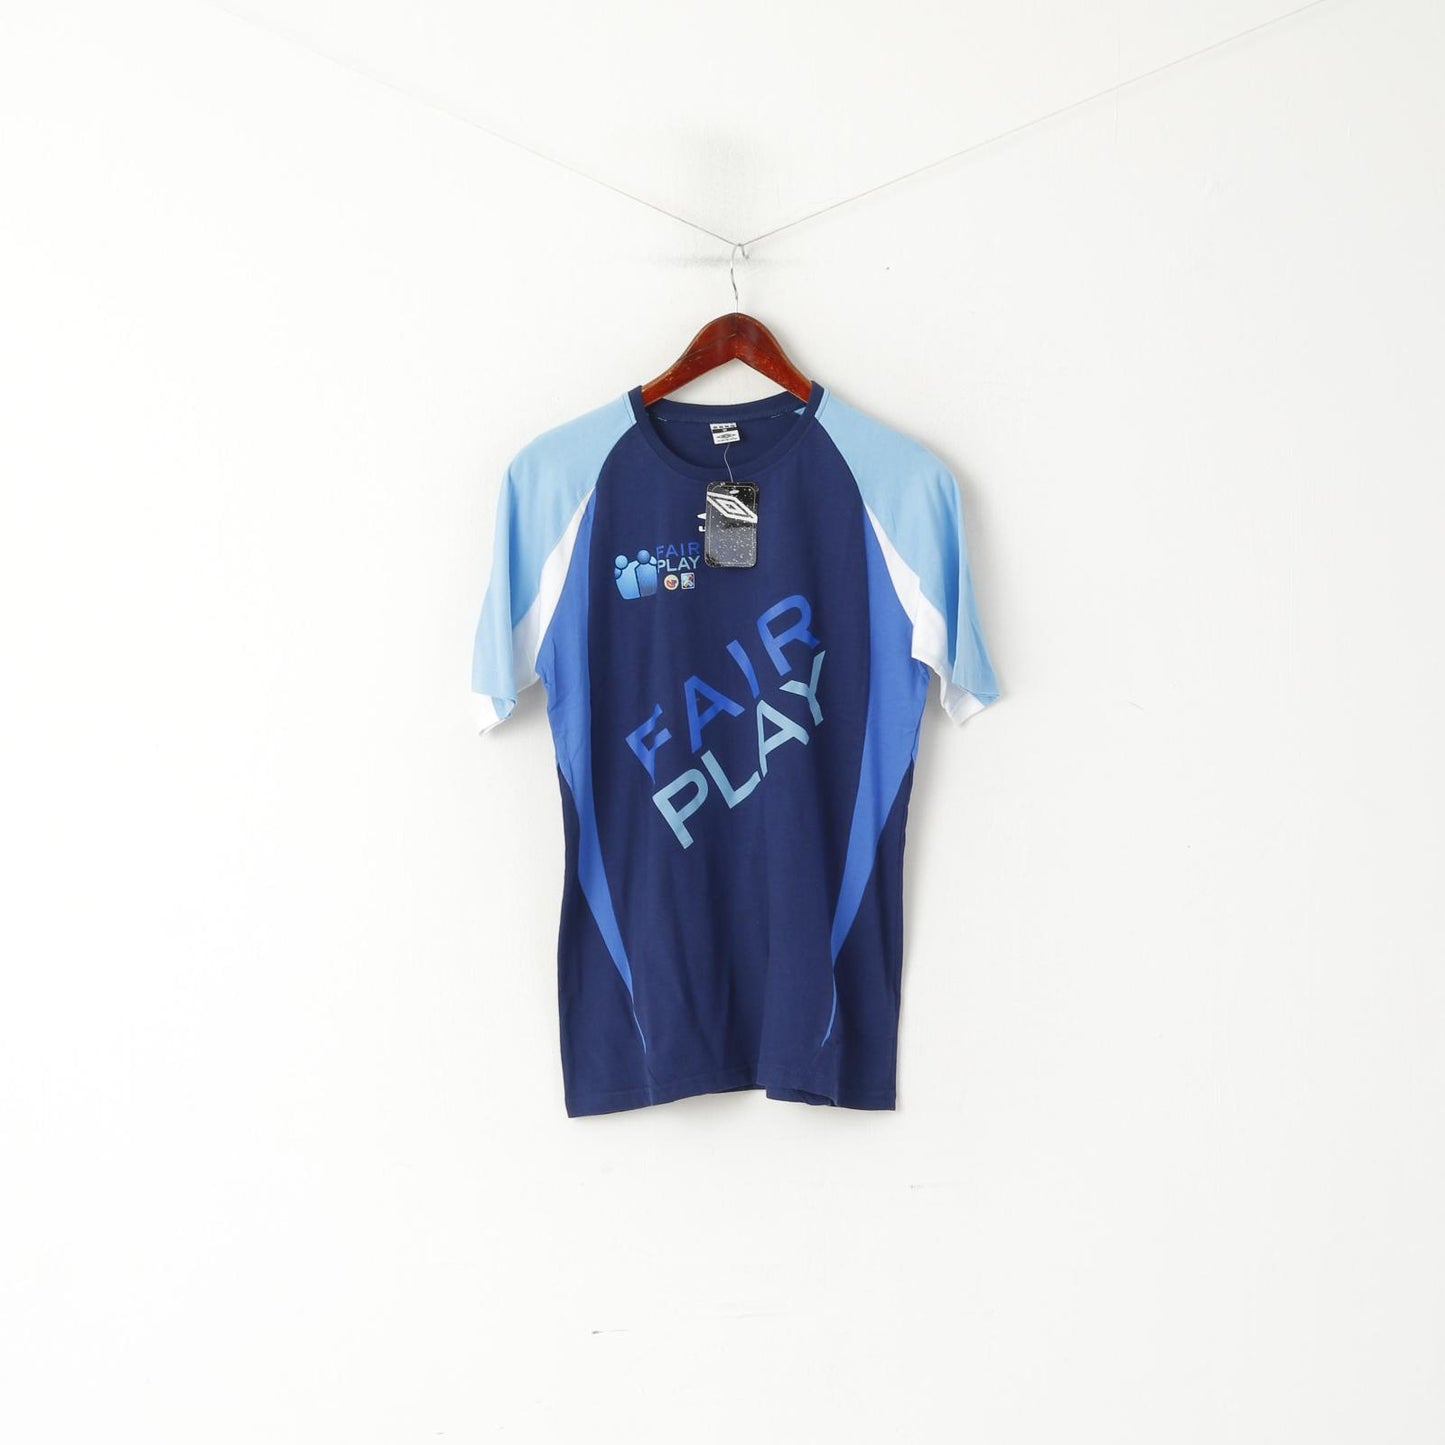 New Umbro Men M T-Shirt Blue Cotton Fair Play Football Sportswear Top